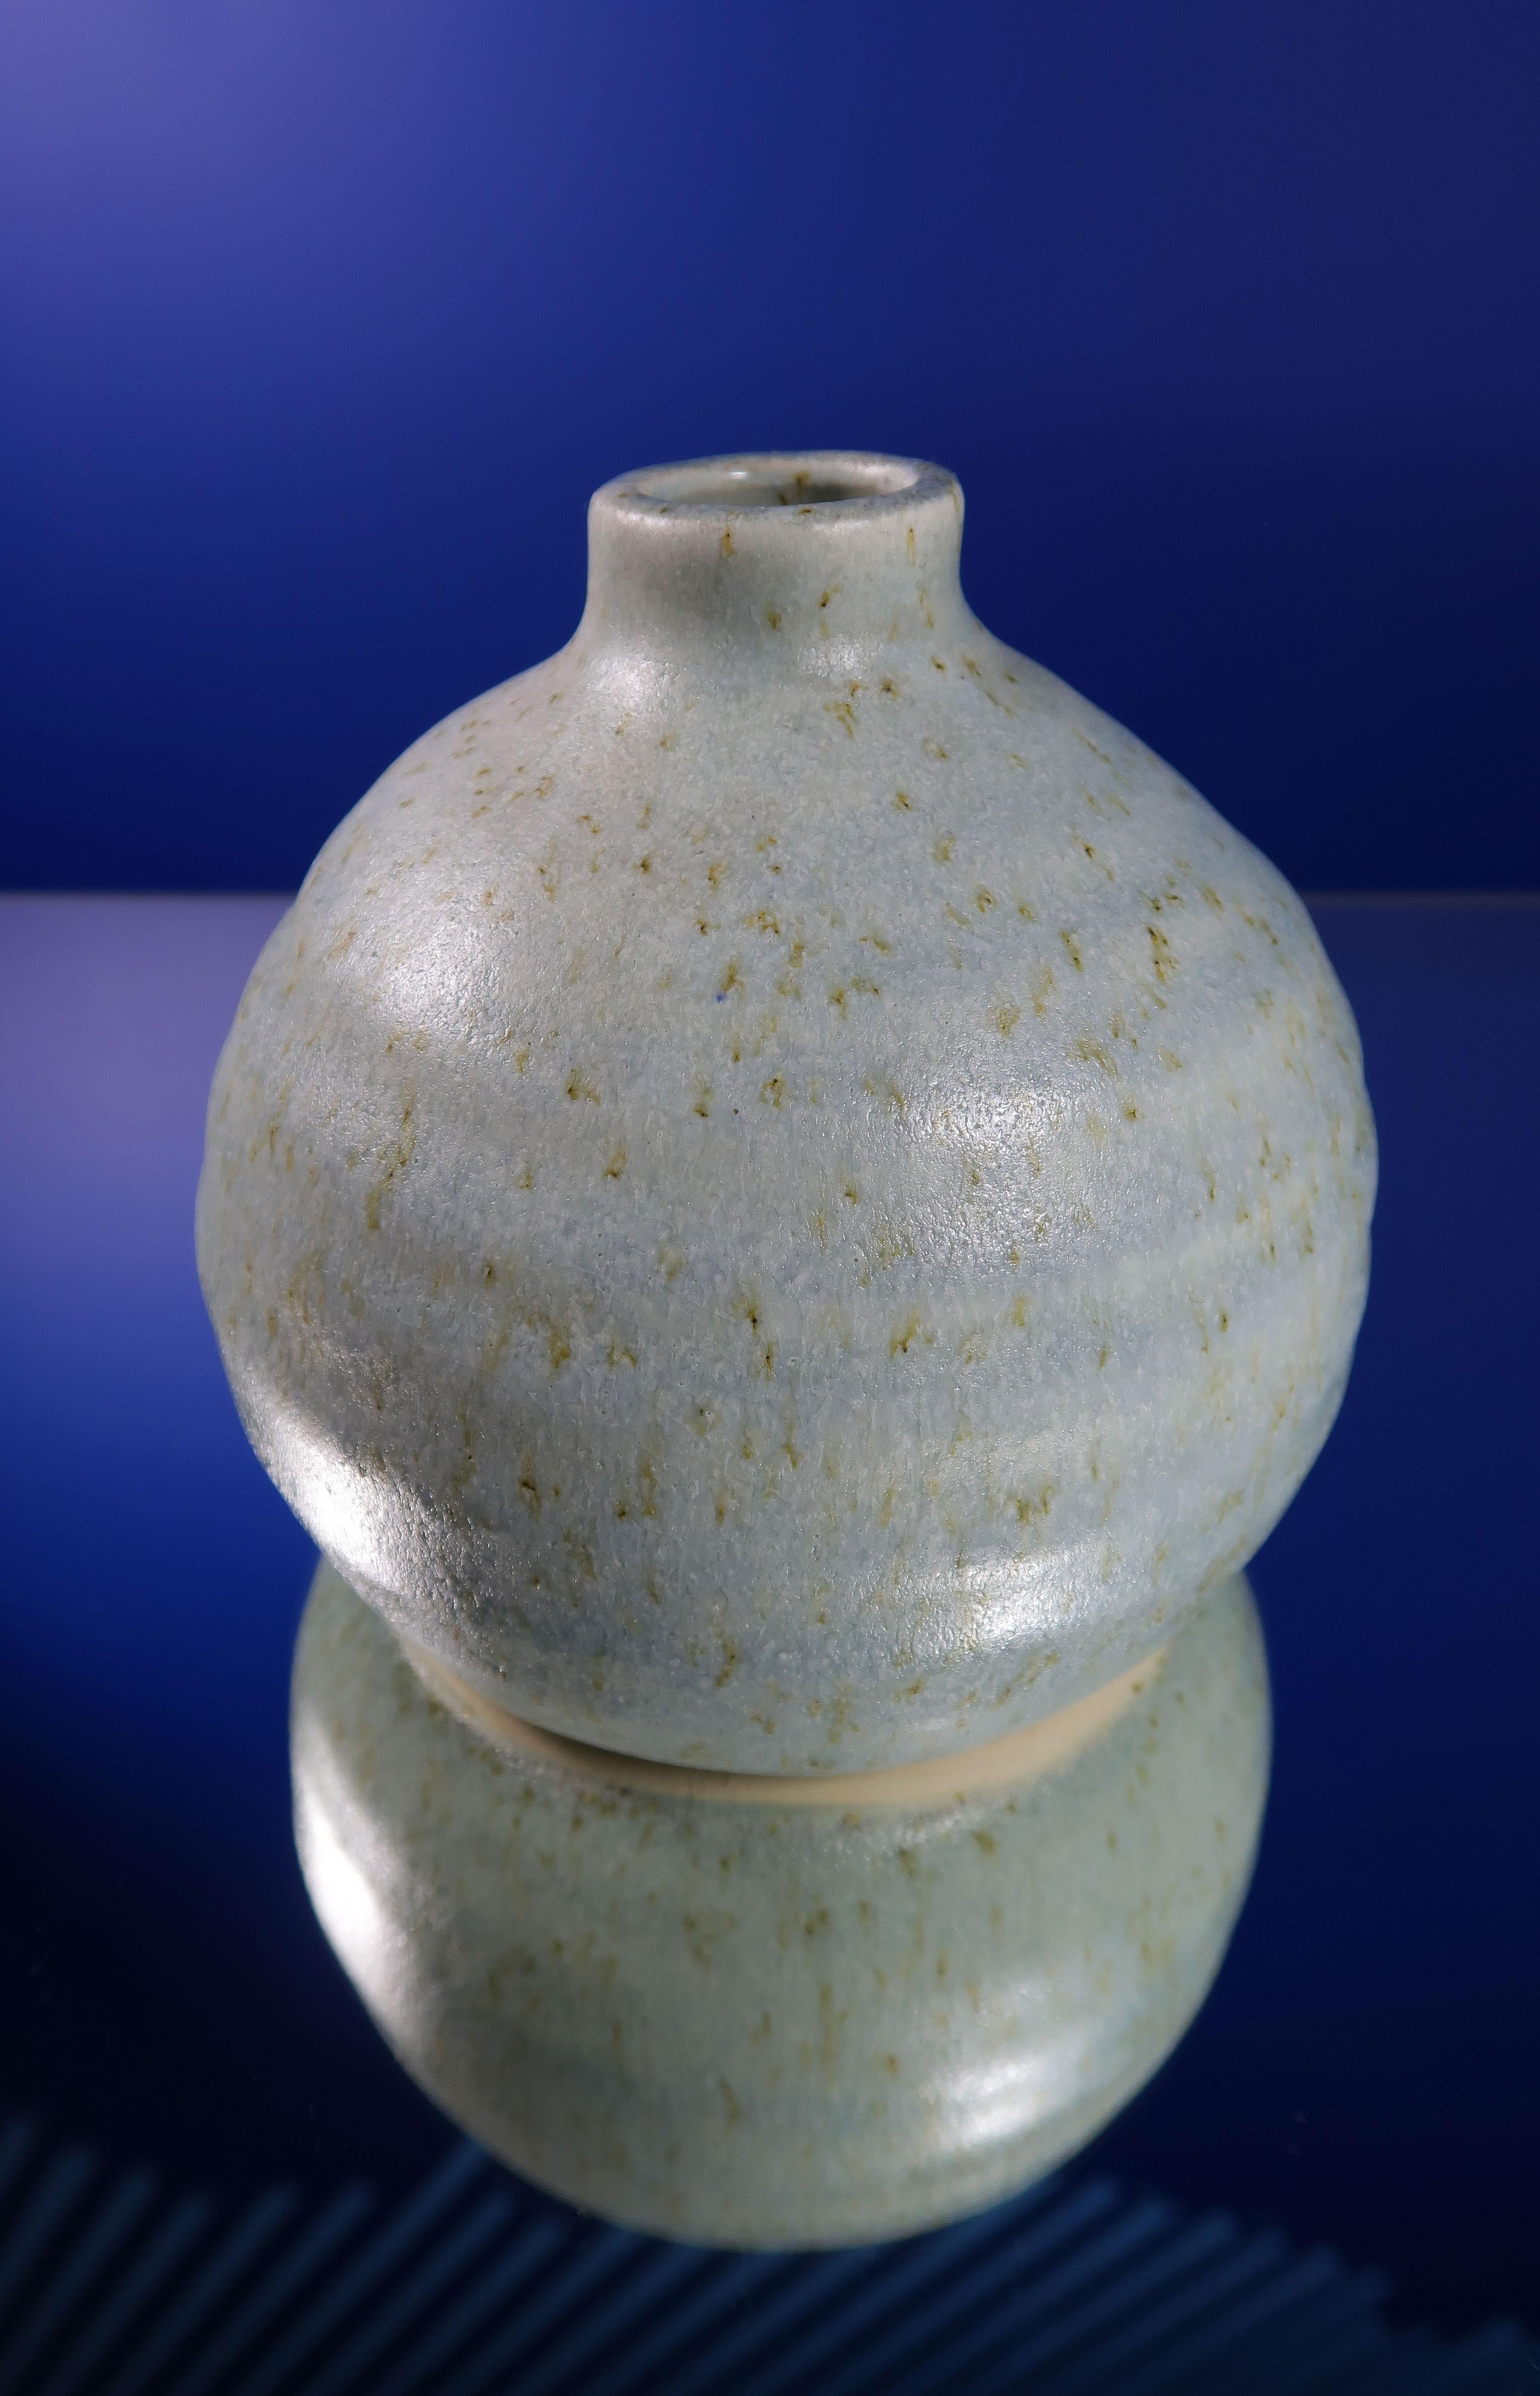 Handgefertigte runde Keramikvase im skandinavischen Stil der Jahrhundertmitte. Helle aquablaue Glasur mit karamellfarbenen Sprenkeln. Plumpe Form mit kurzem Hals. Schöner Vintage-Zustand. 